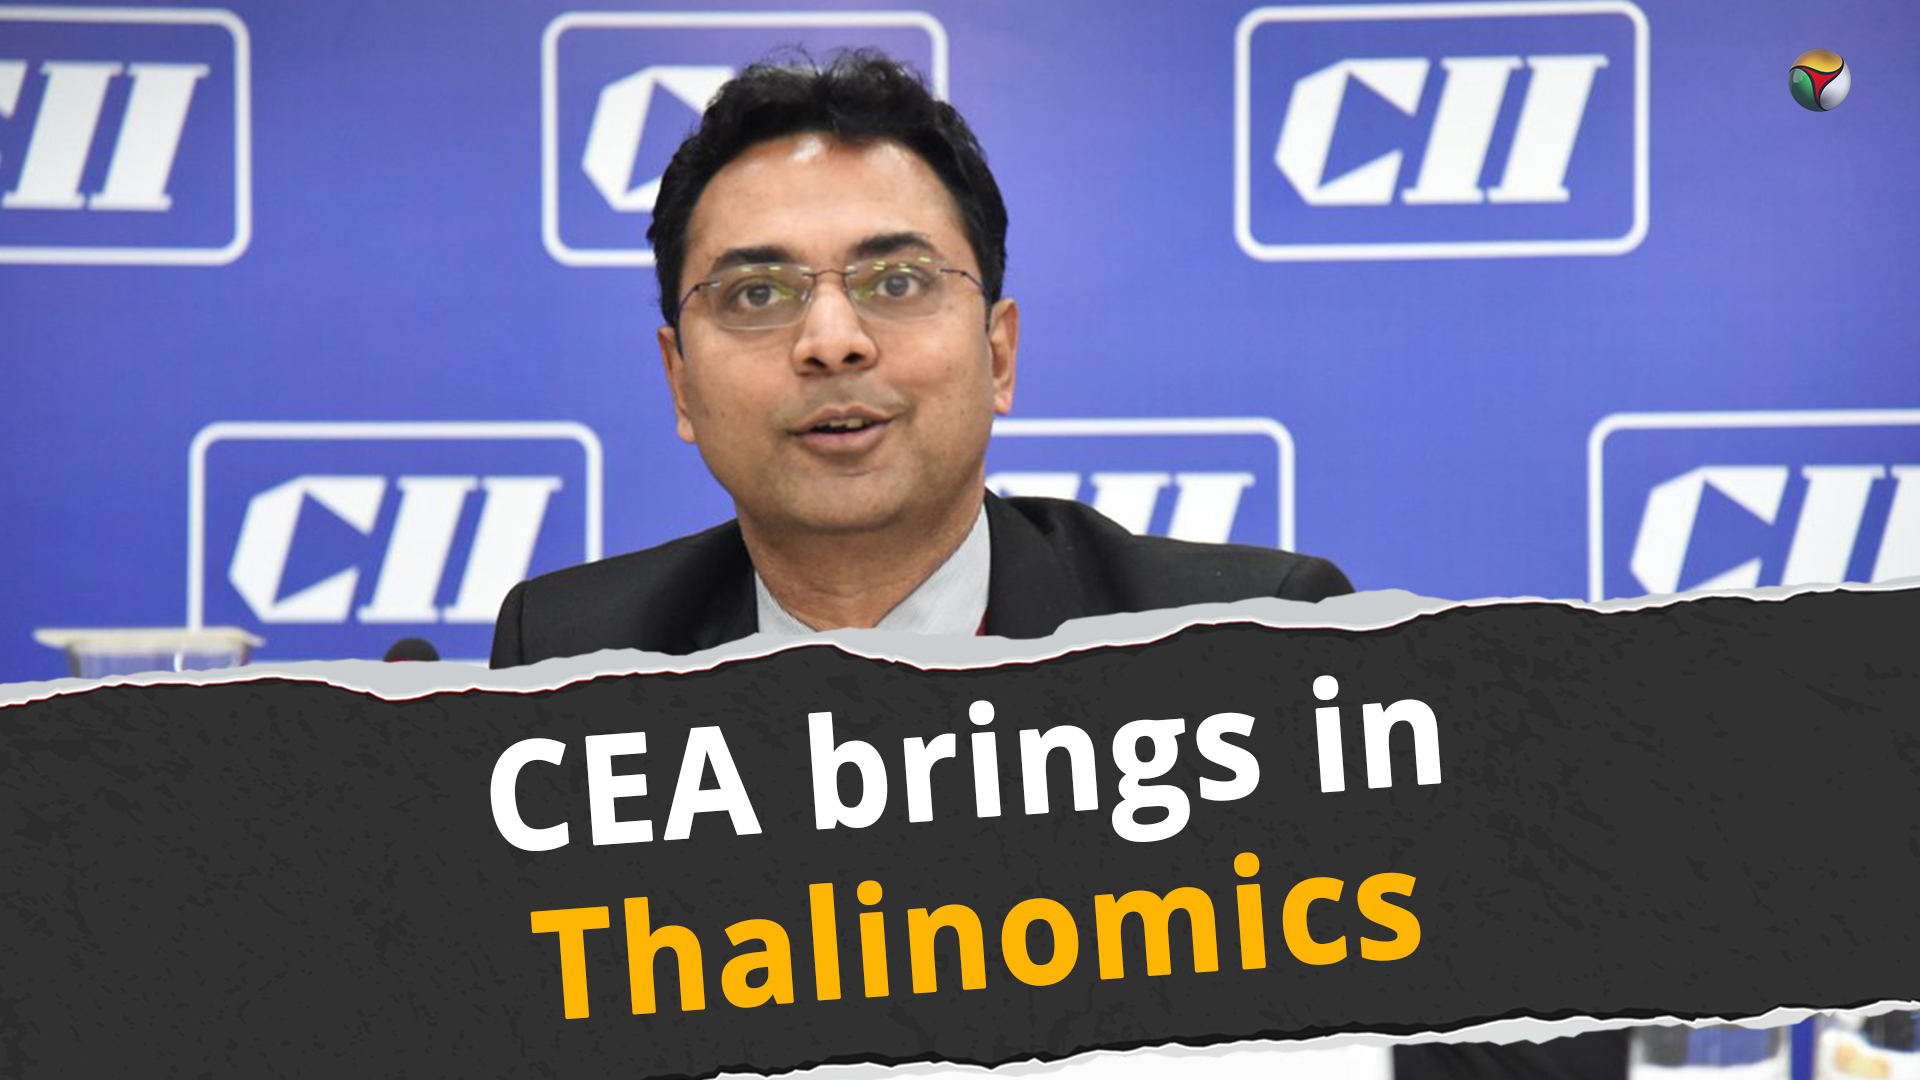 Chief Economic adviser brings in Thalinomics